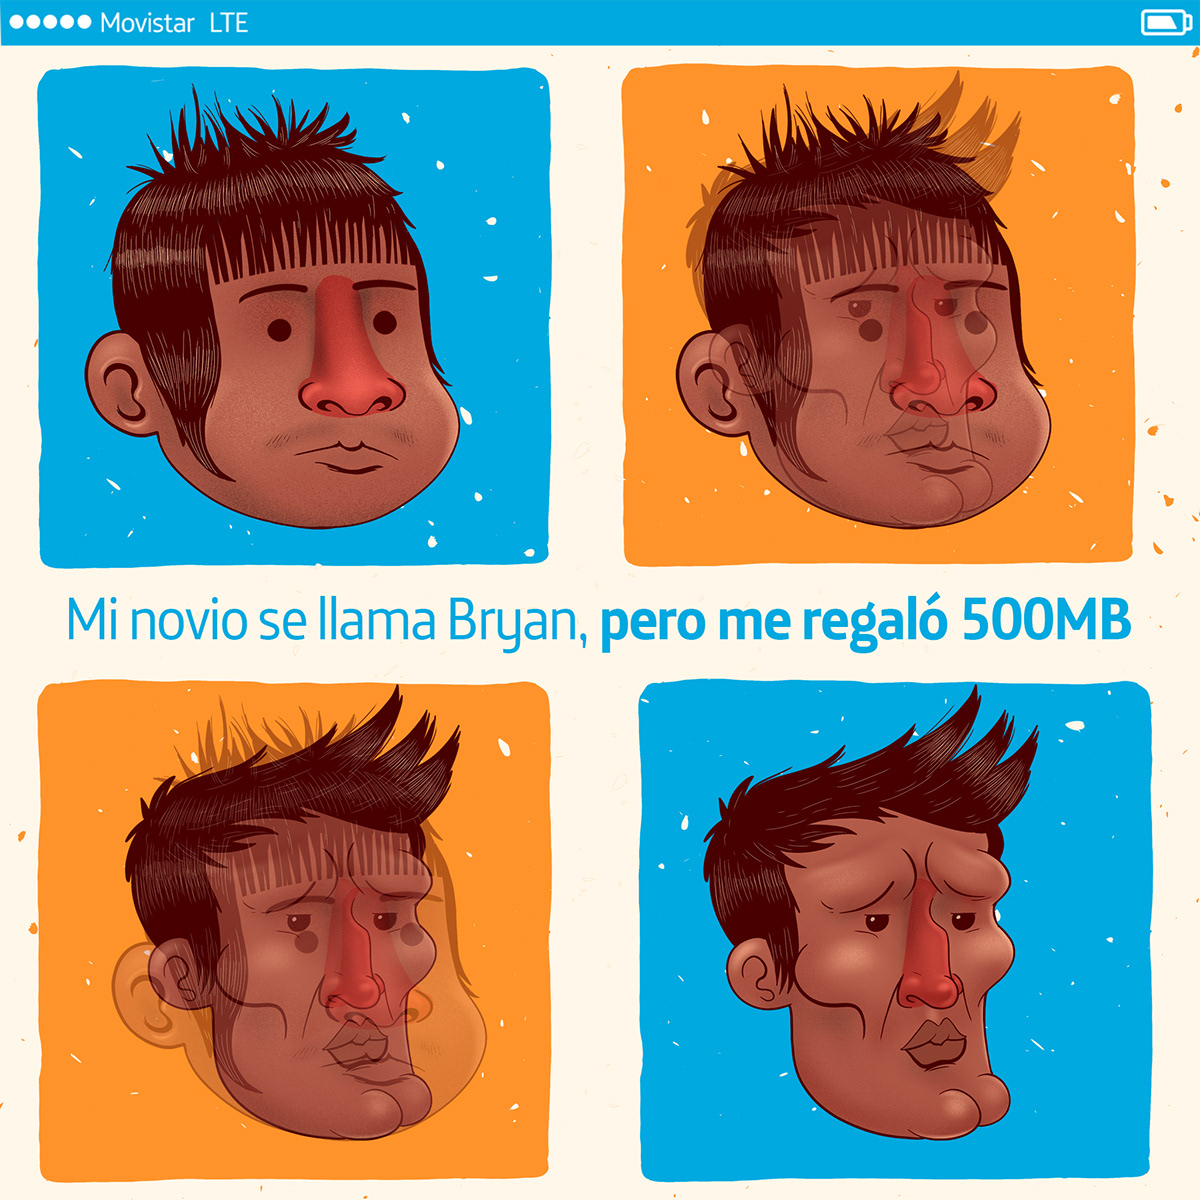 movistar Ecuador celulares digital facebook Desmuncubic redes sociales ilustracion animacion phone